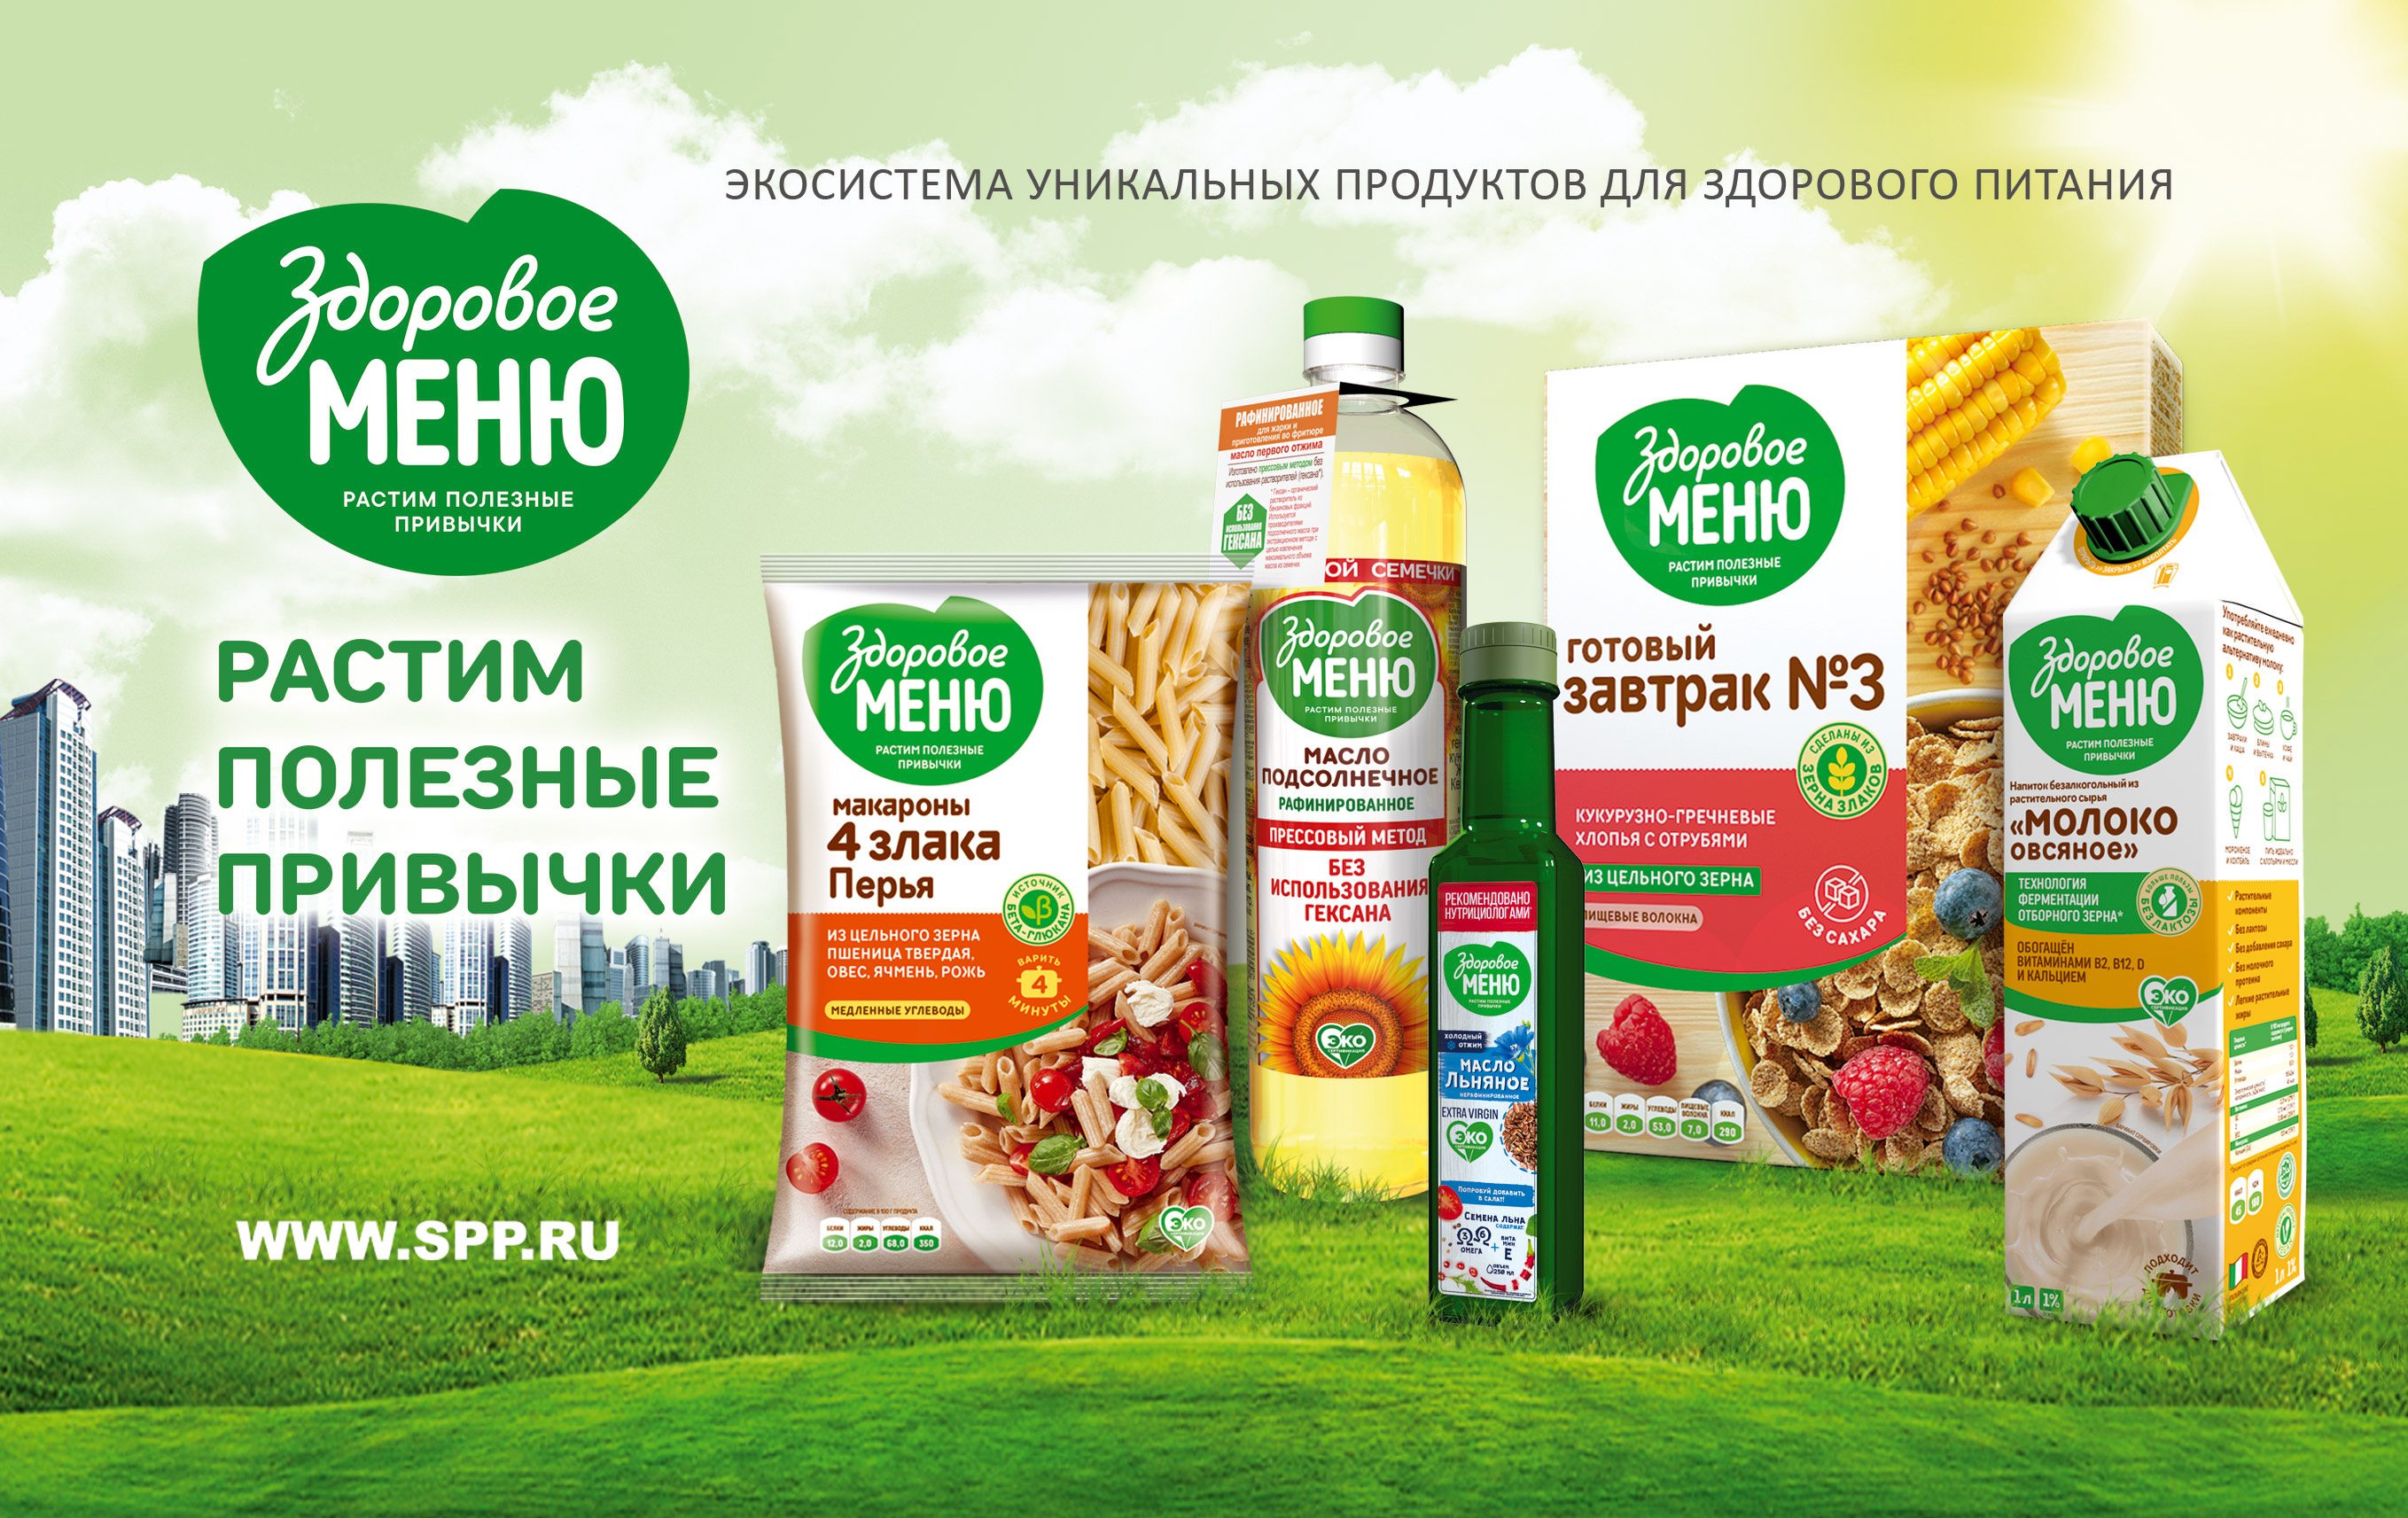 «Здоровое меню» — марка с говорящим названием от «Союзпищепрома» — объединило продукты, разработанные под наши потребности